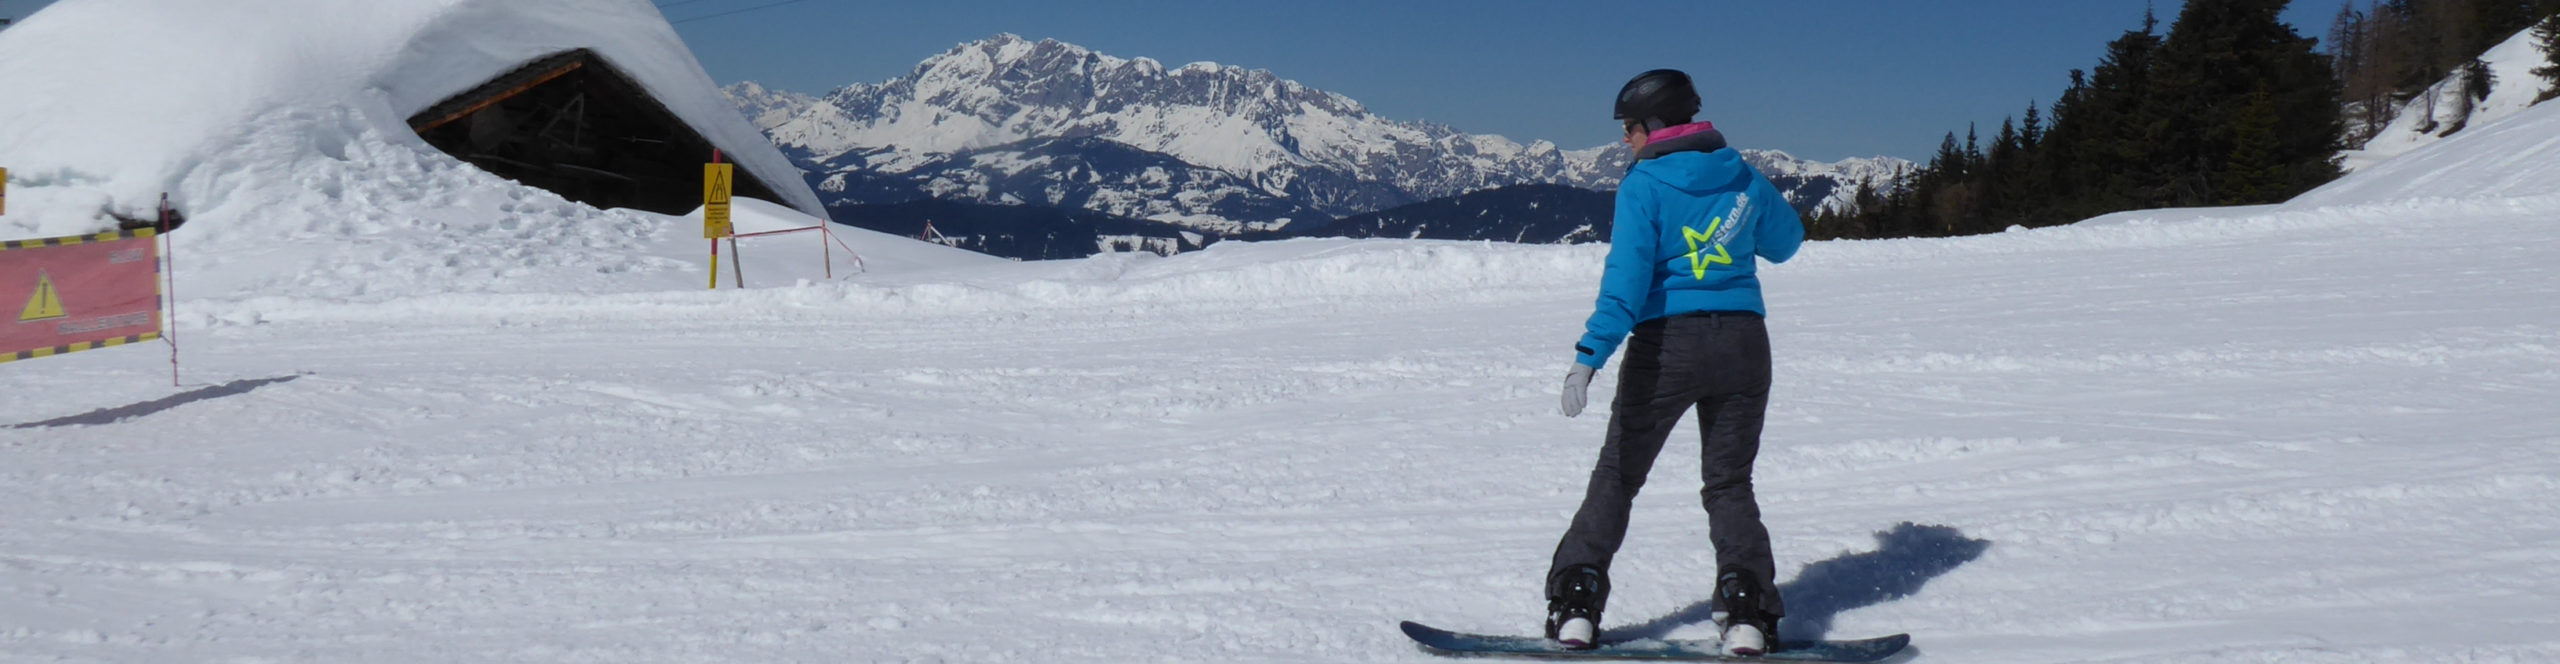 SKIWELT WILDER KAISER – SCHEFFAU – Skiwochenende in eines der größten Skigebiete Österreichs – auch ab Wiesentheid & Lichtenfels & Bramberg 